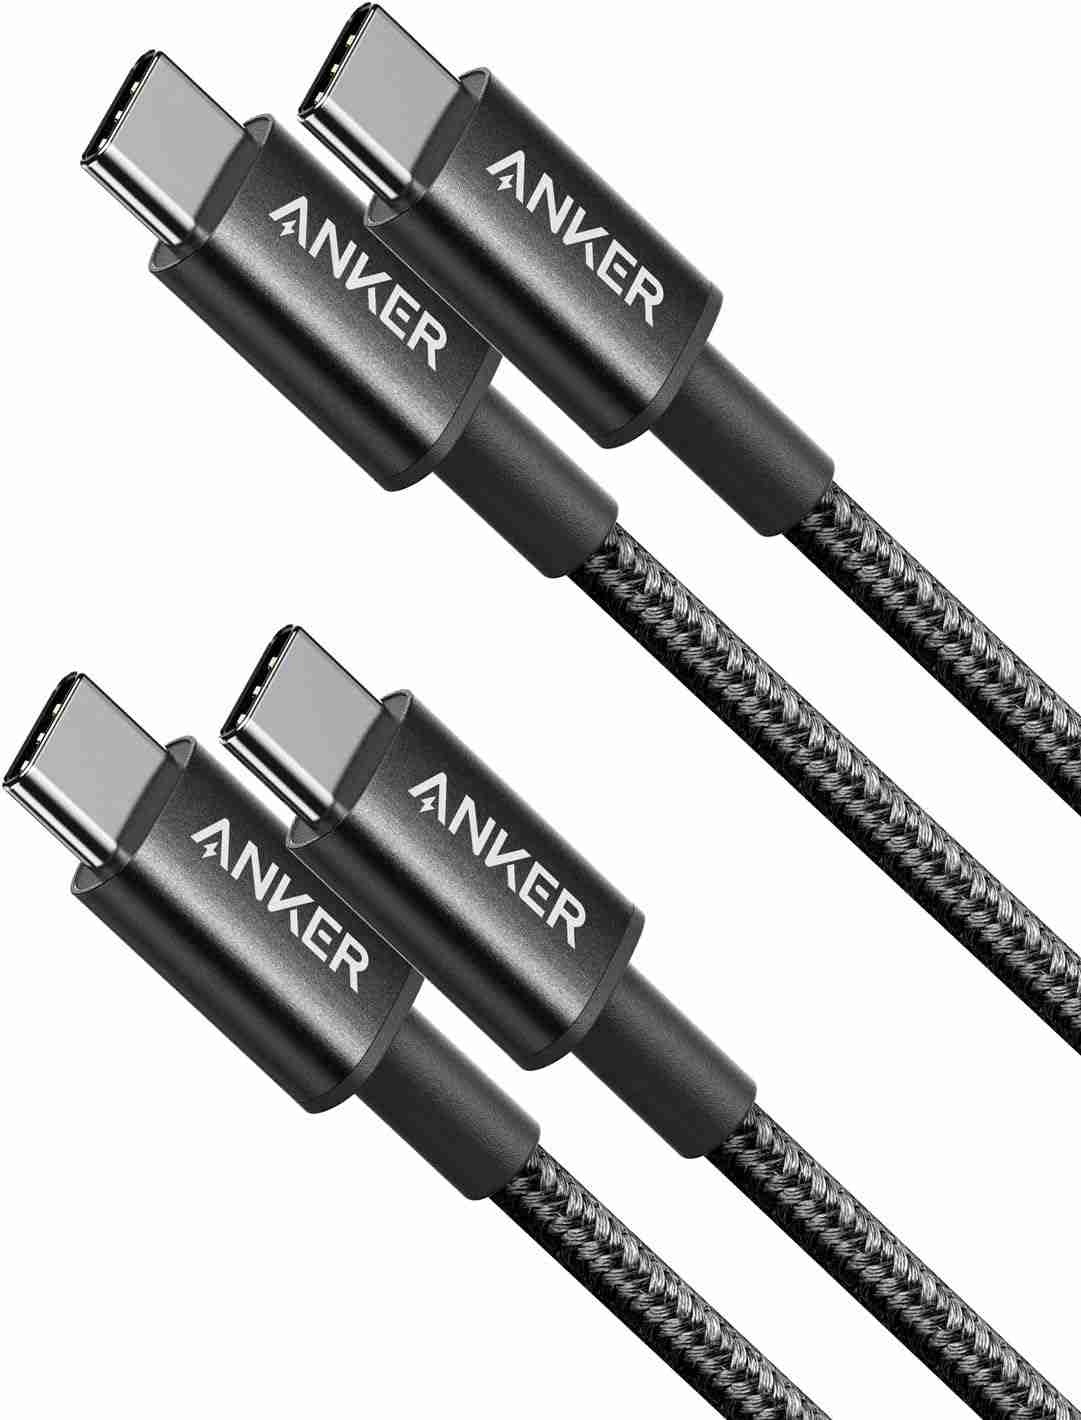 アンカー「Anker NewNylon USB-C to USB-C Cable 2.0 60W」は2本セットで税込1290円